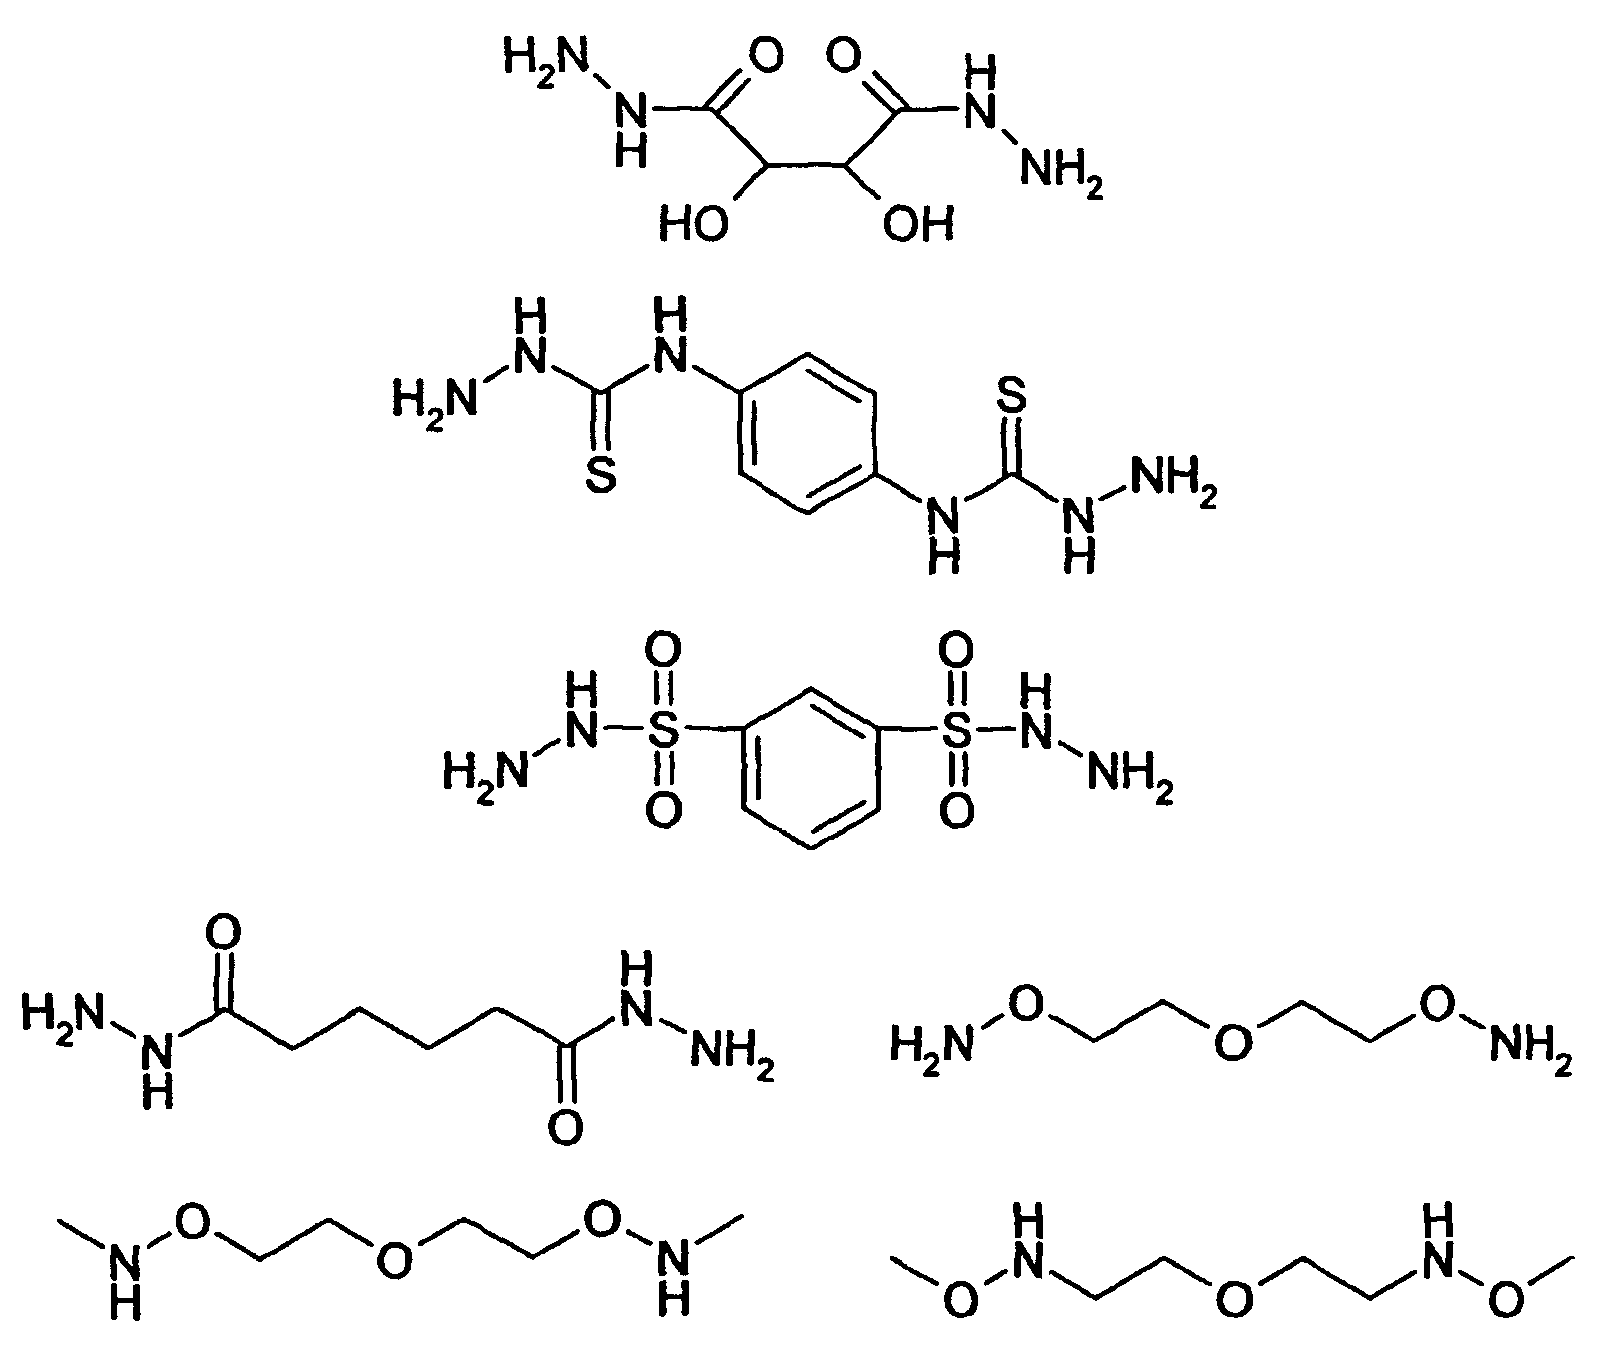 Сборка полипептидов. Полипептид формула. Полипептид получение. Форма молекулы полипептида. Изобразите в виде рисунка все стадии синтеза полипептида.